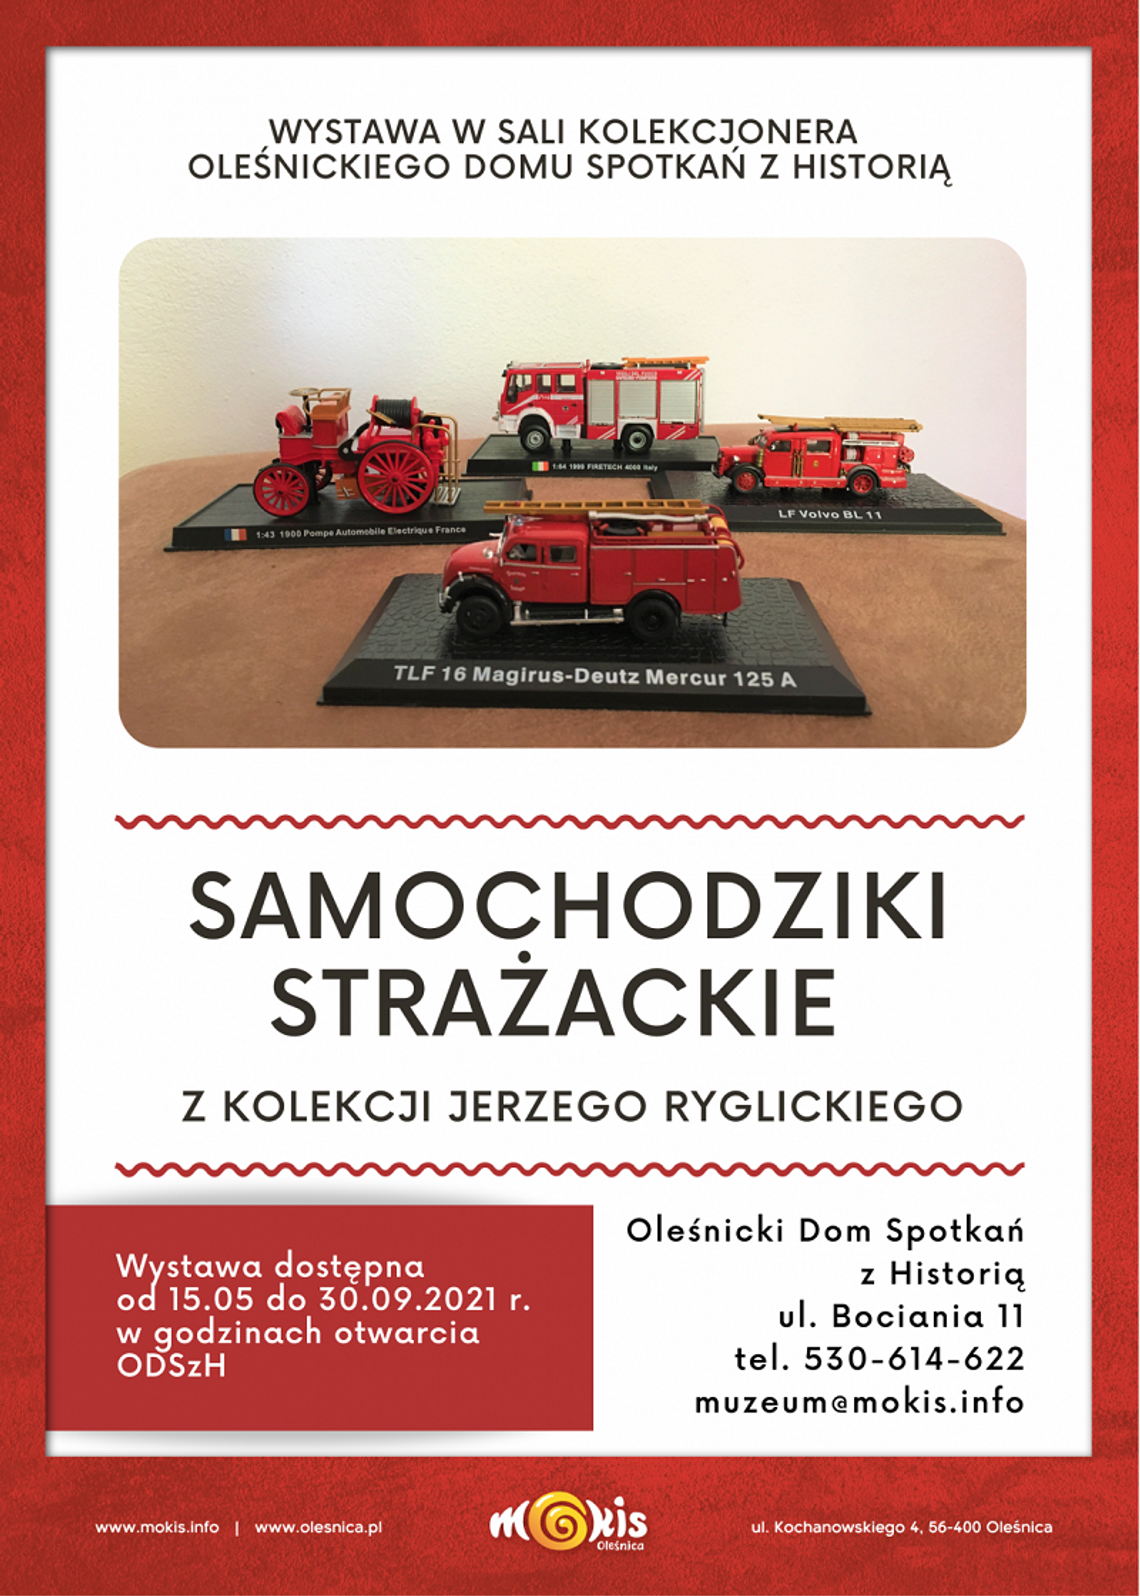  Wystawa "Samochodziki strażackie" z kolekcji Jerzego Ryglickiego